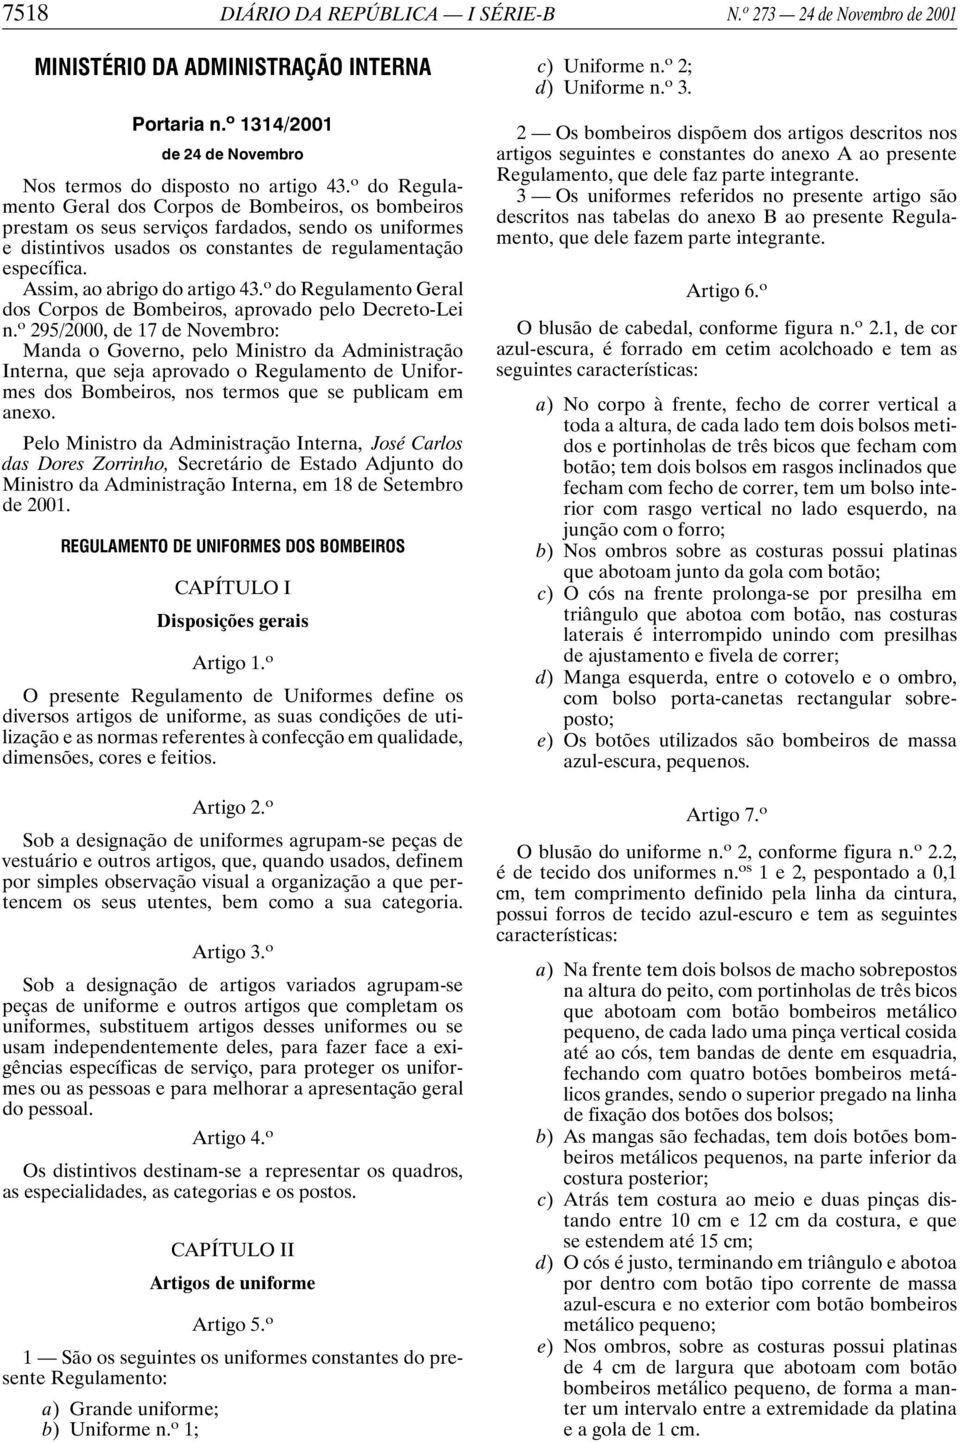 Assim, ao abrigo do artigo 43. o do Regulamento Geral dos Corpos de Bombeiros, aprovado pelo Decreto-Lei n.